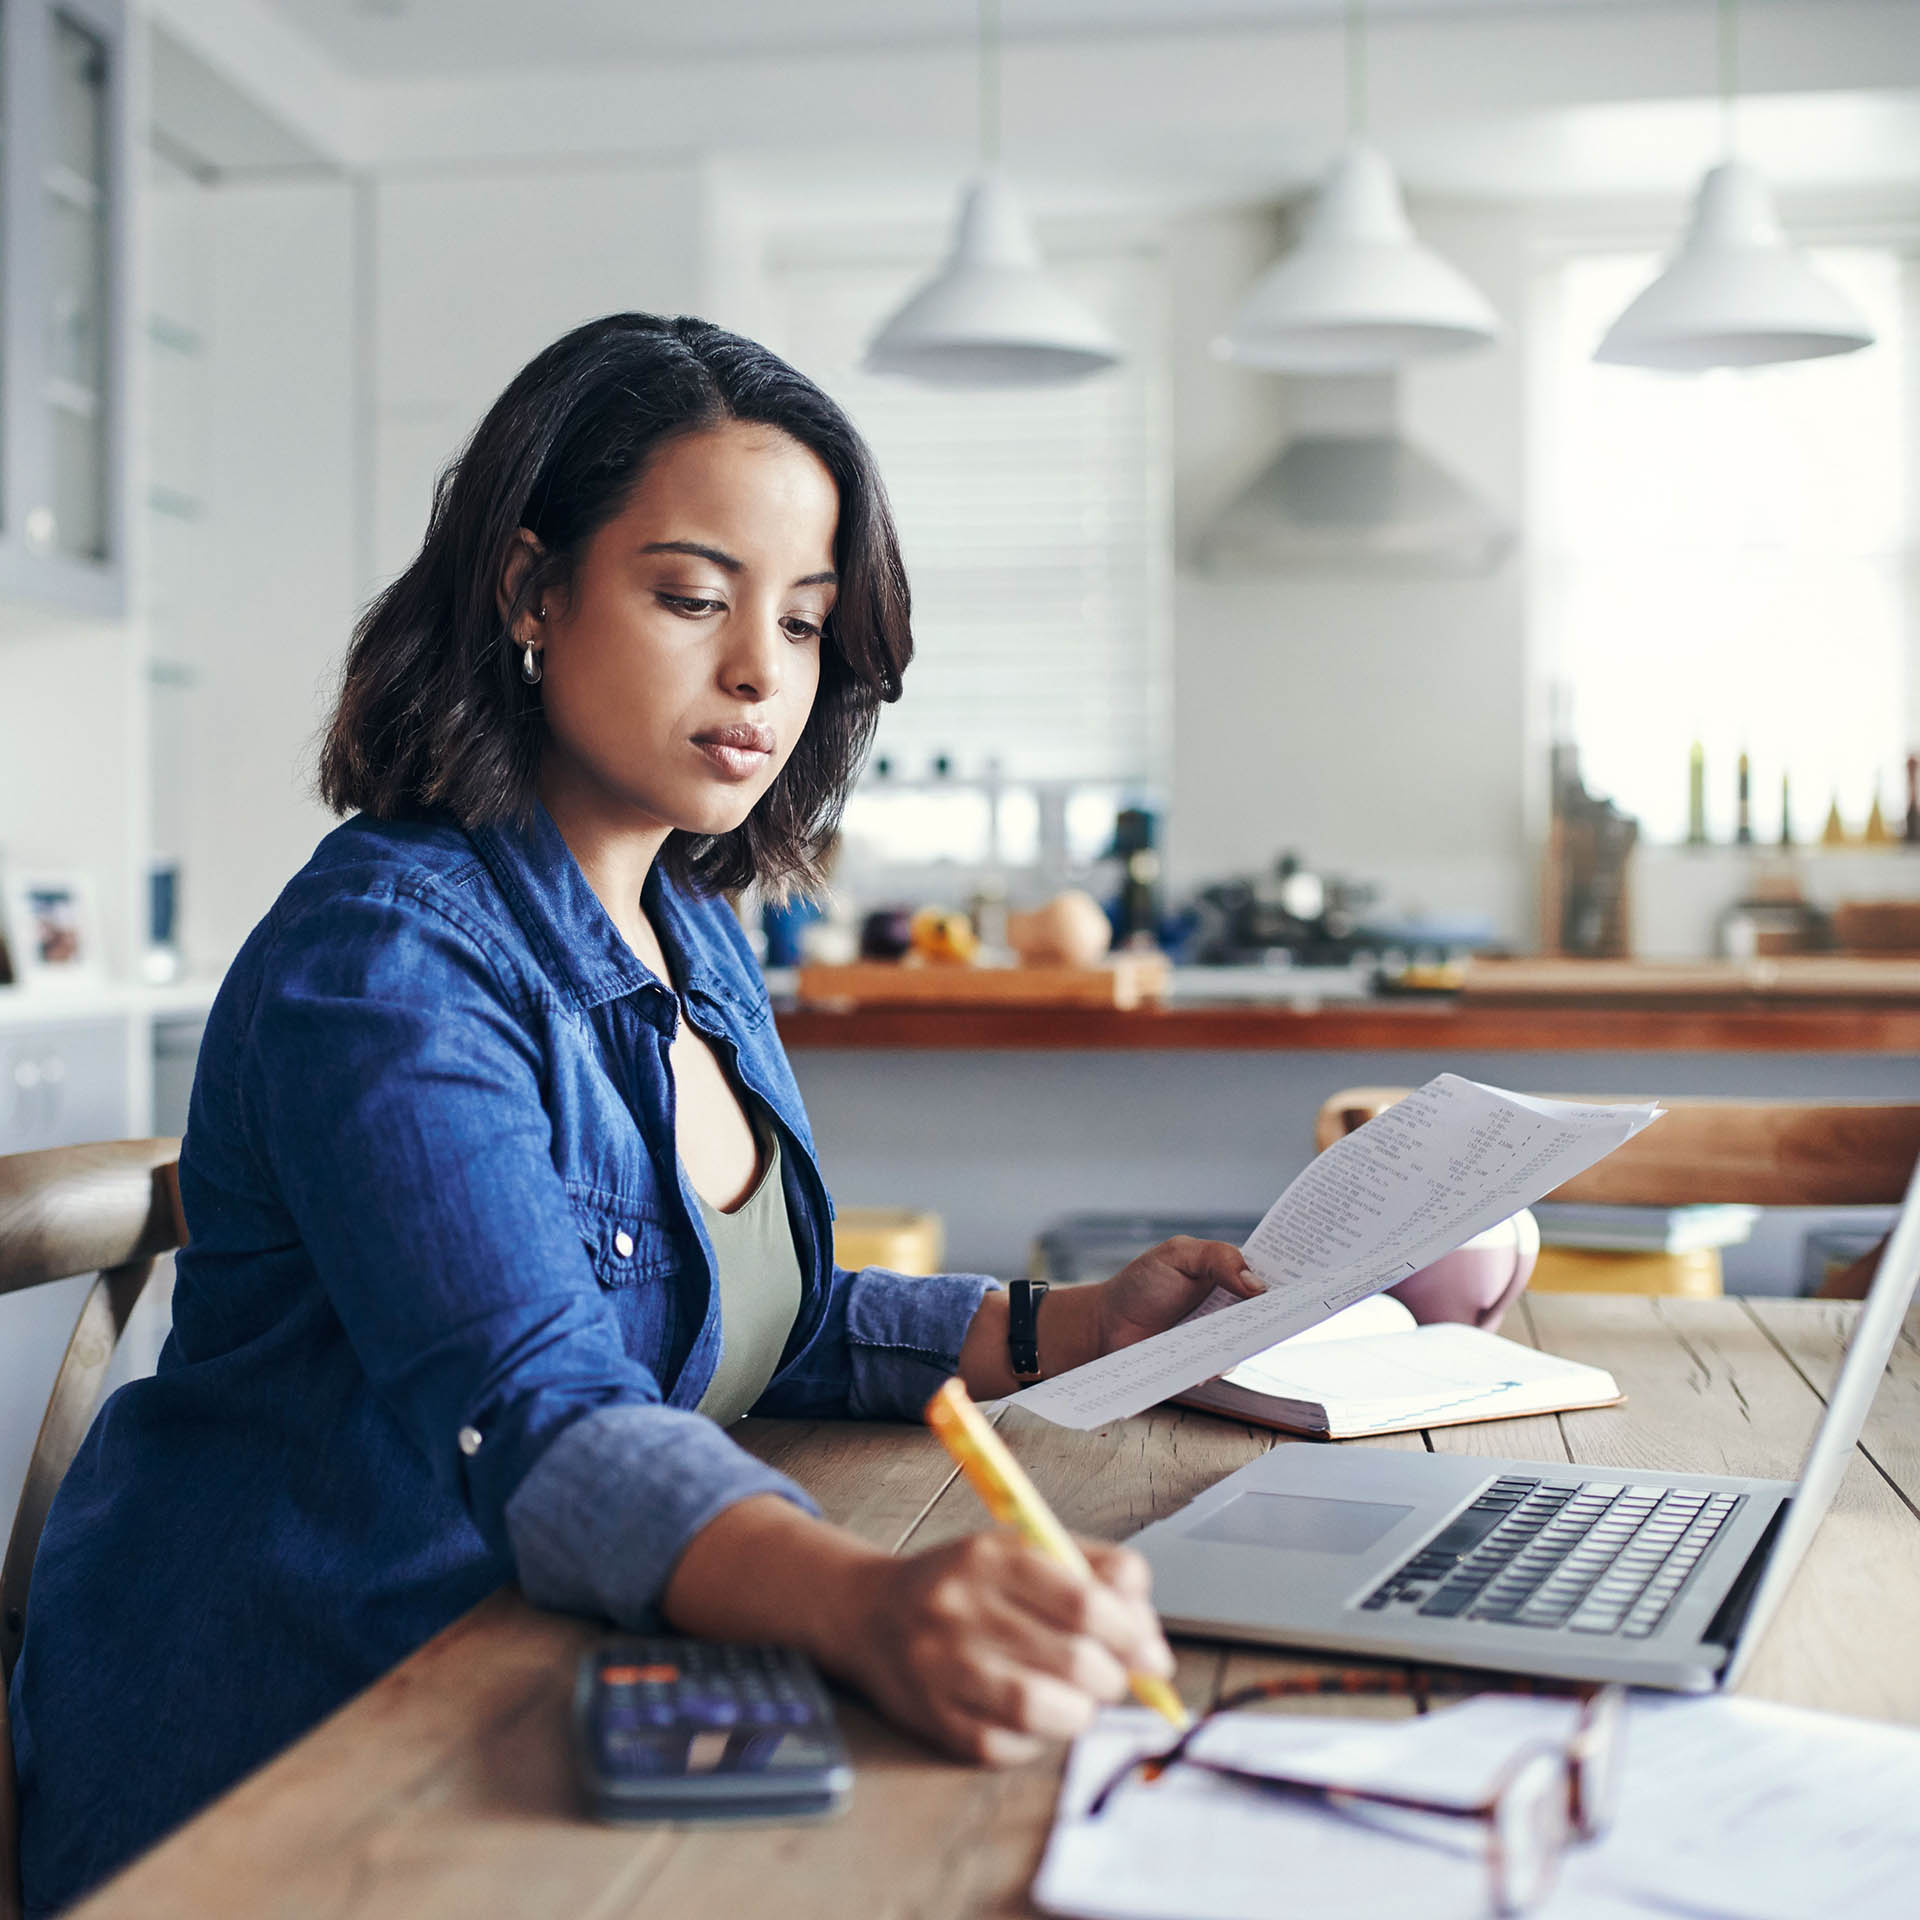 En kvinne skriver på papir mens hun sitter ved en kontorpult foran en bærbar datamaskin